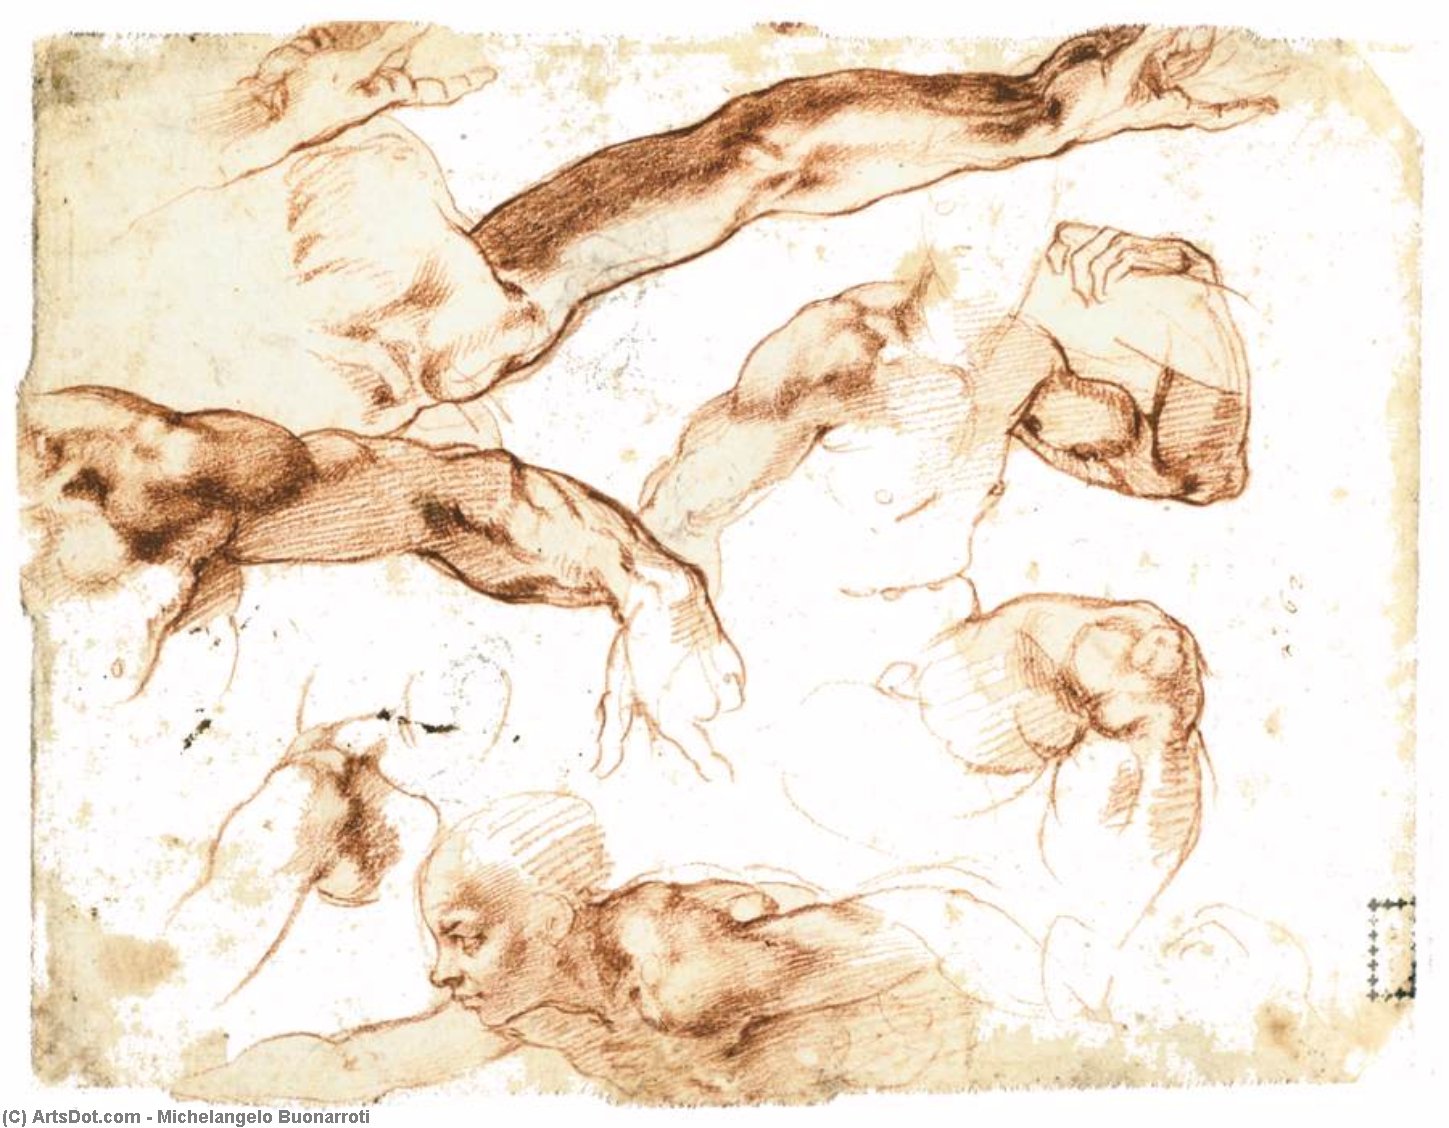 WikiOO.org - Енциклопедия за изящни изкуства - Живопис, Произведения на изкуството Michelangelo Buonarroti - Various Studies of Figures and Limbs (verso)